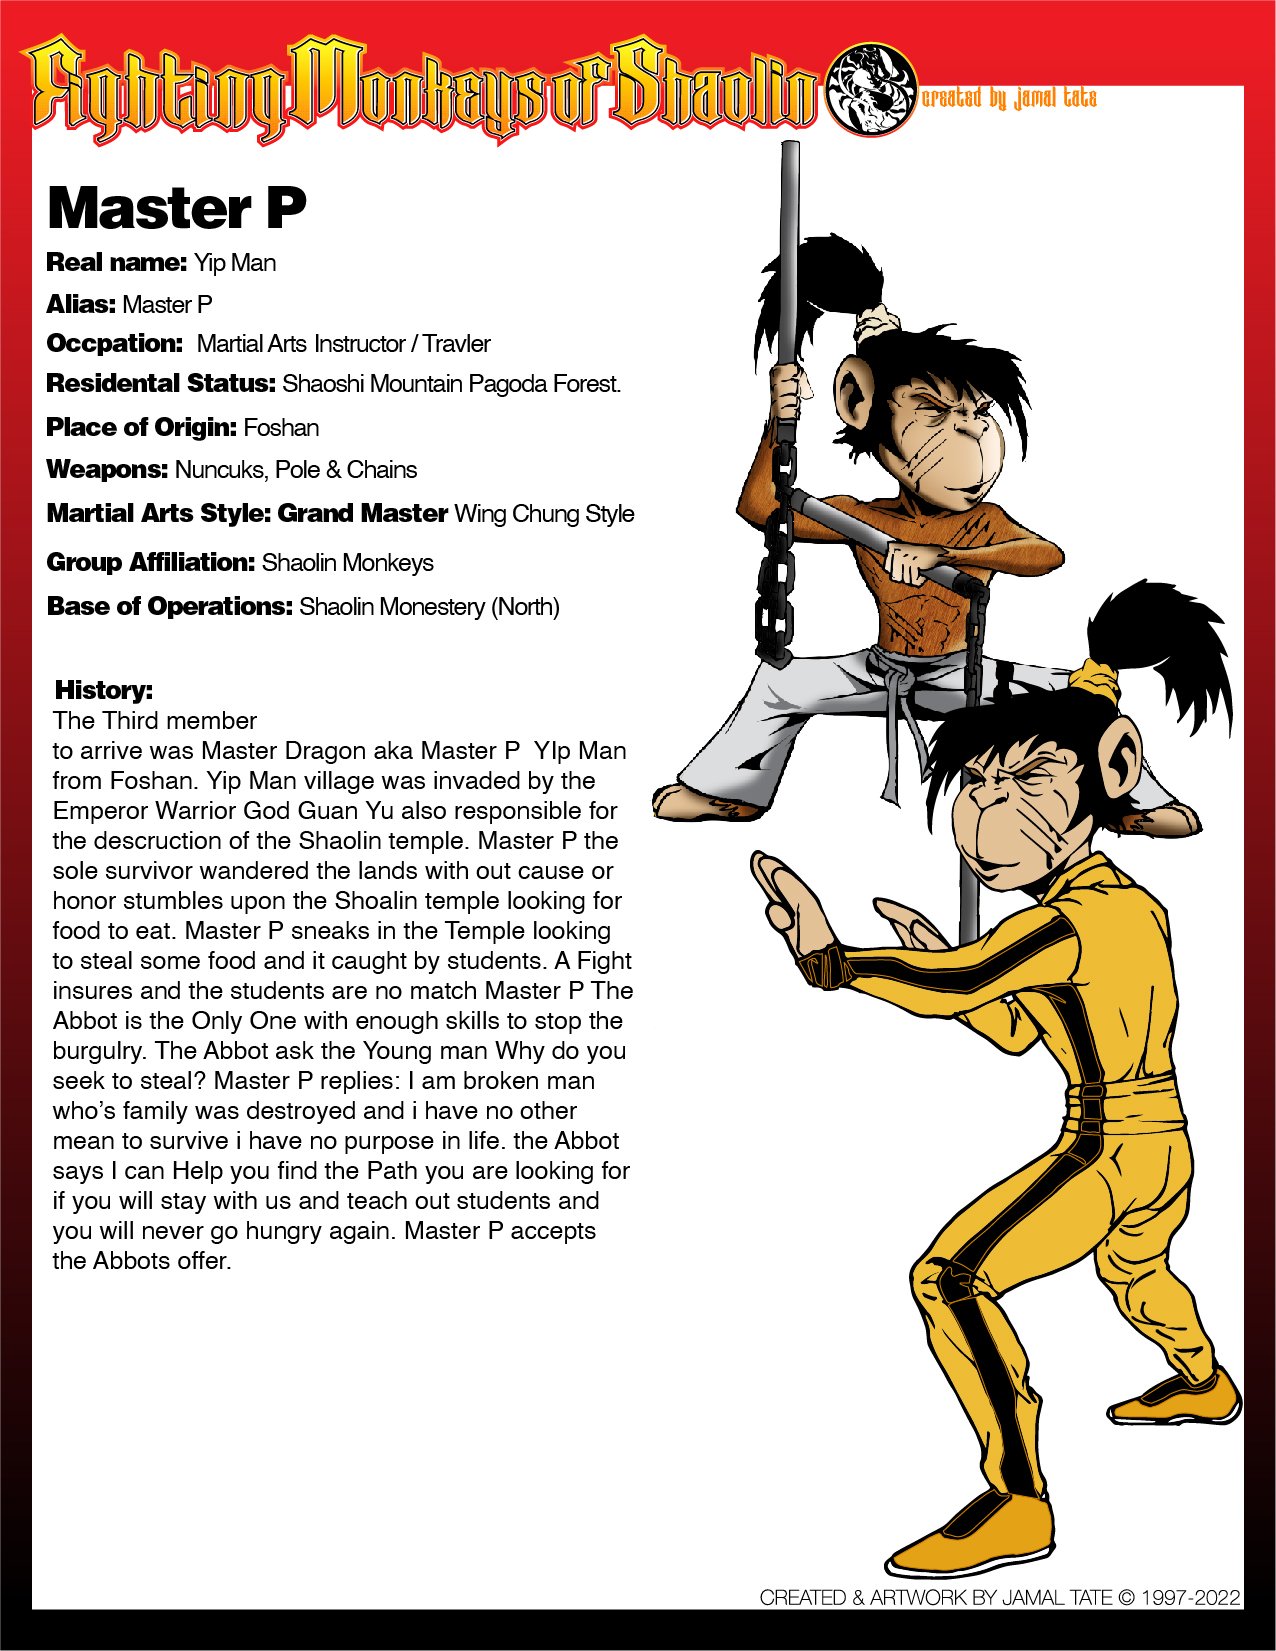 Master P-Bio-01.jpg